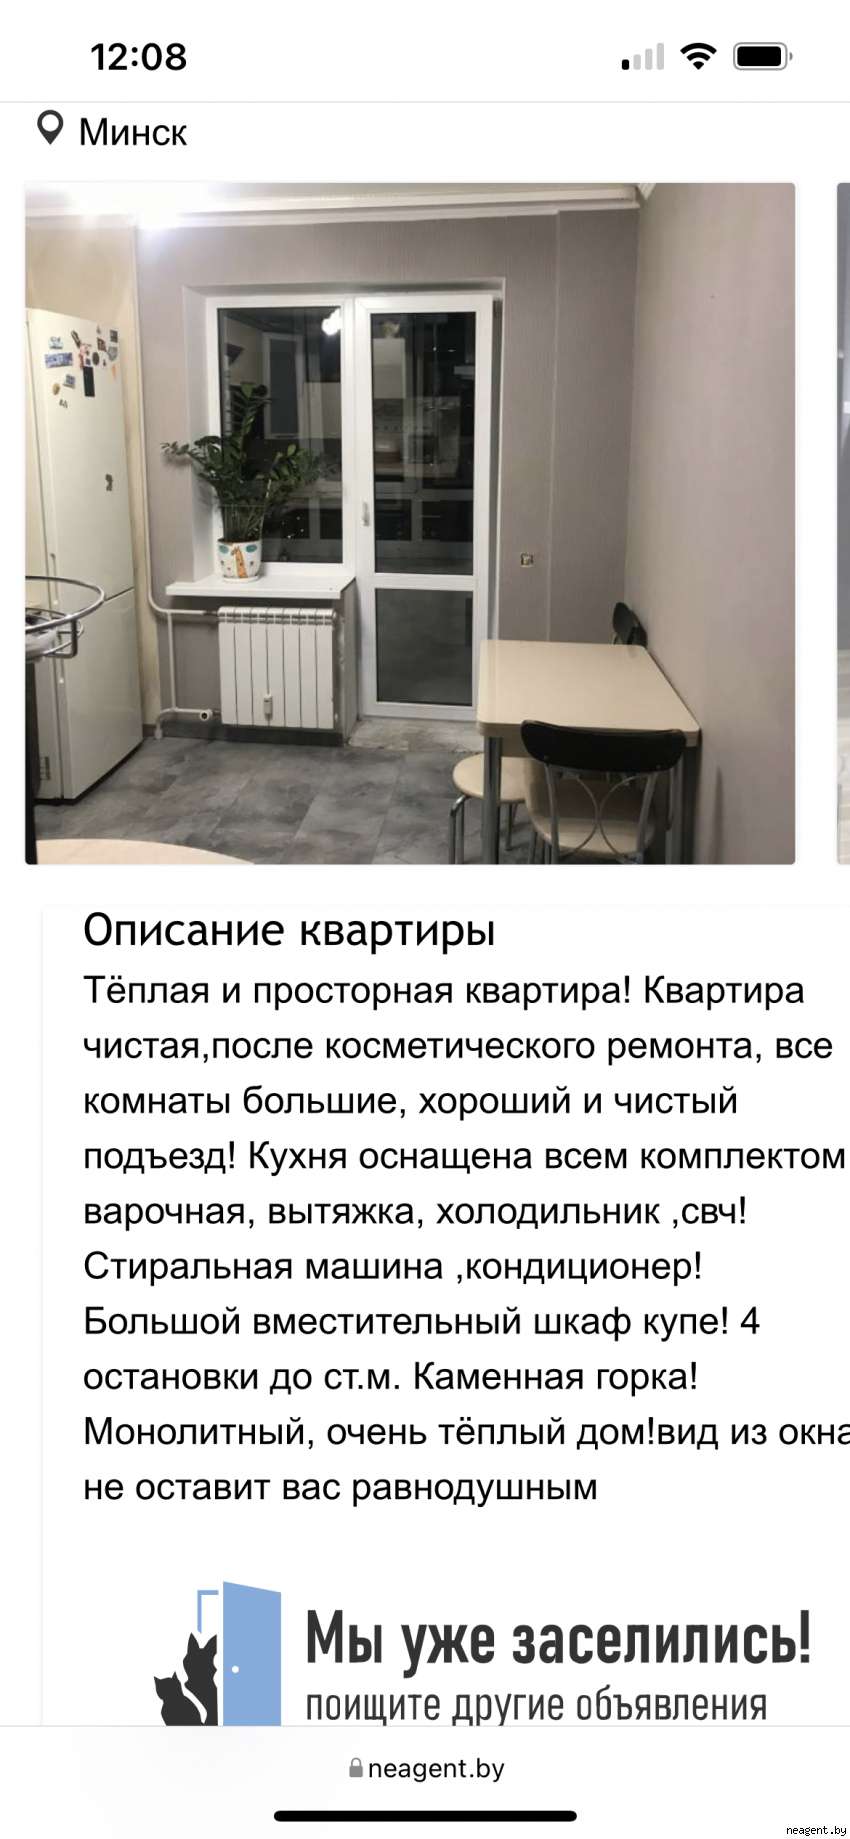 1-комнатная квартира, ул. Скрипникова, 15, 186000 рублей: фото 3